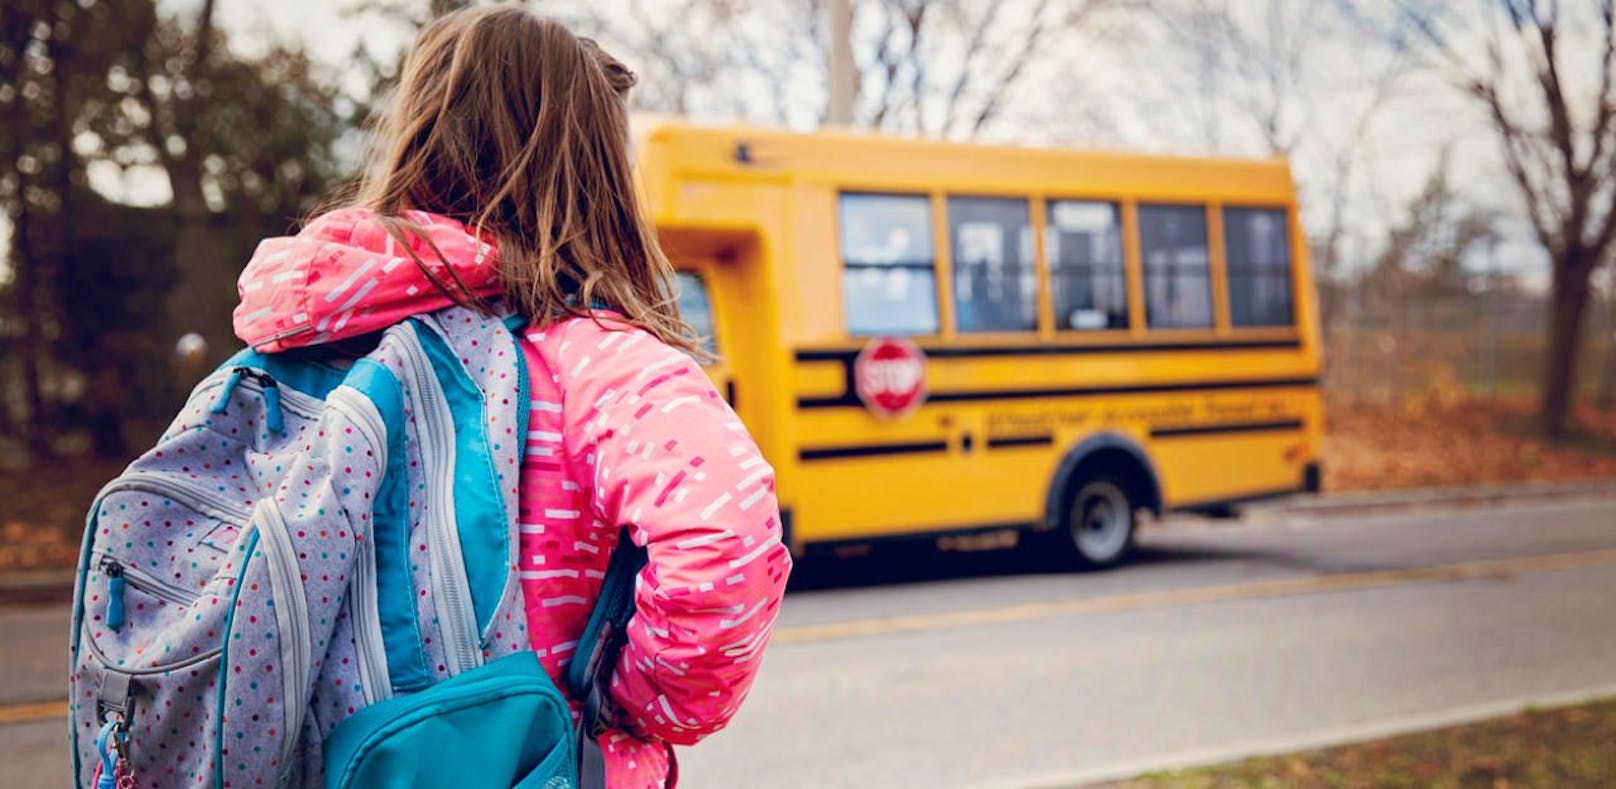 15-jähriges Mädchen in Schulbus sexuell belästigt